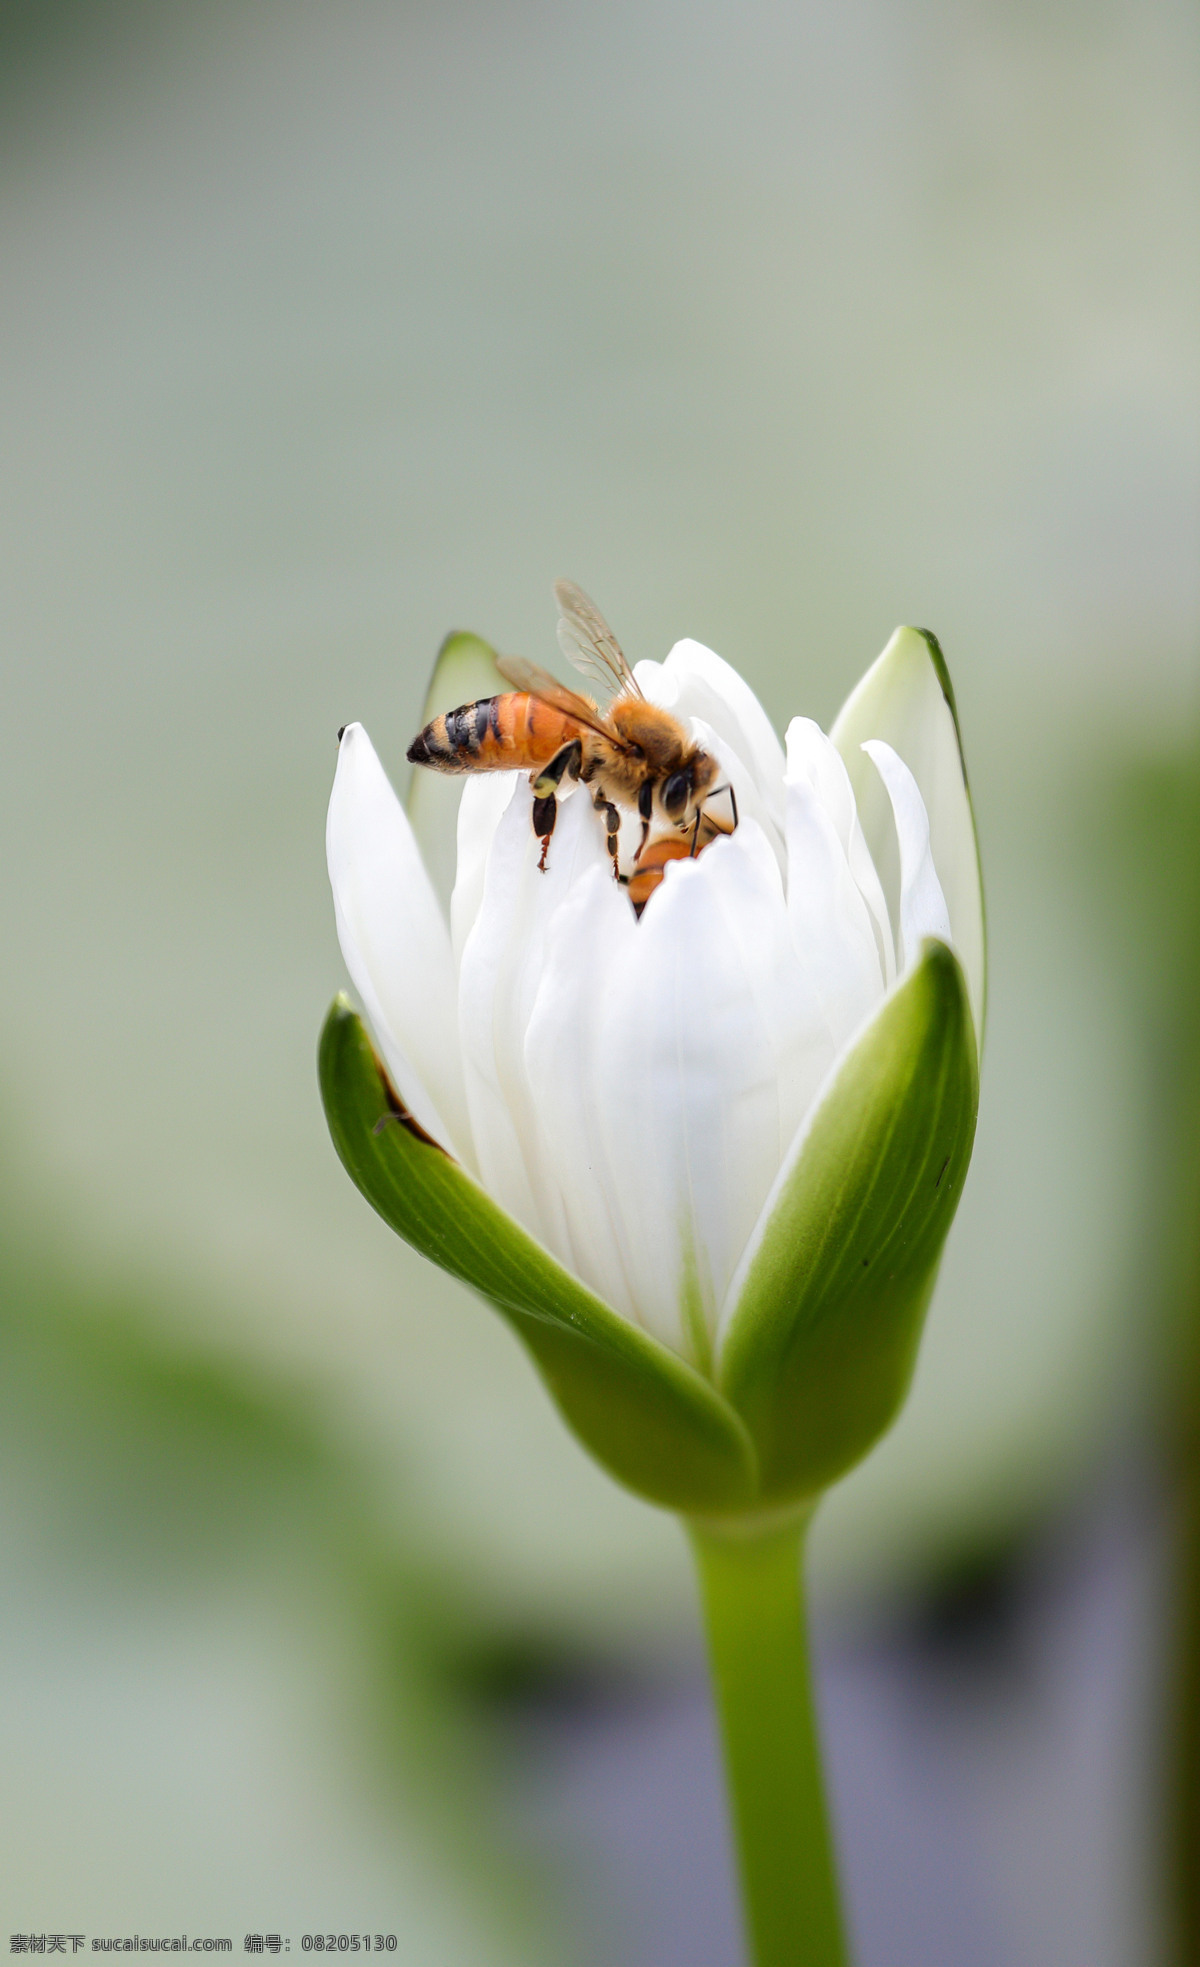 蜜蜂采蜜 荷花 植物 花朵 花卉 观赏 美丽 花儿 蜜蜂 采蜜 白荷花 生物世界 昆虫